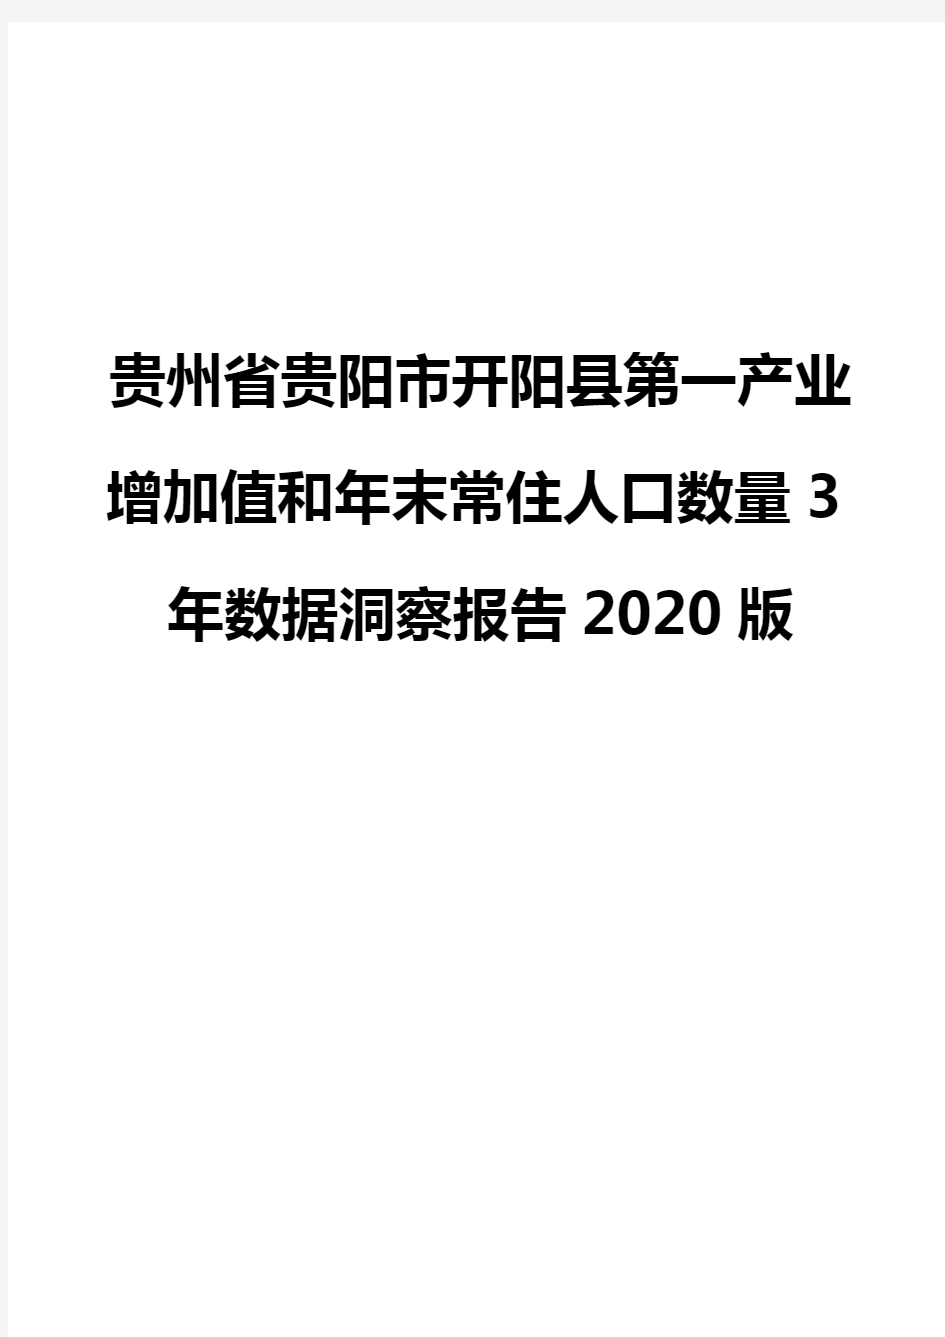 贵州省贵阳市开阳县第一产业增加值和年末常住人口数量3年数据洞察报告2020版